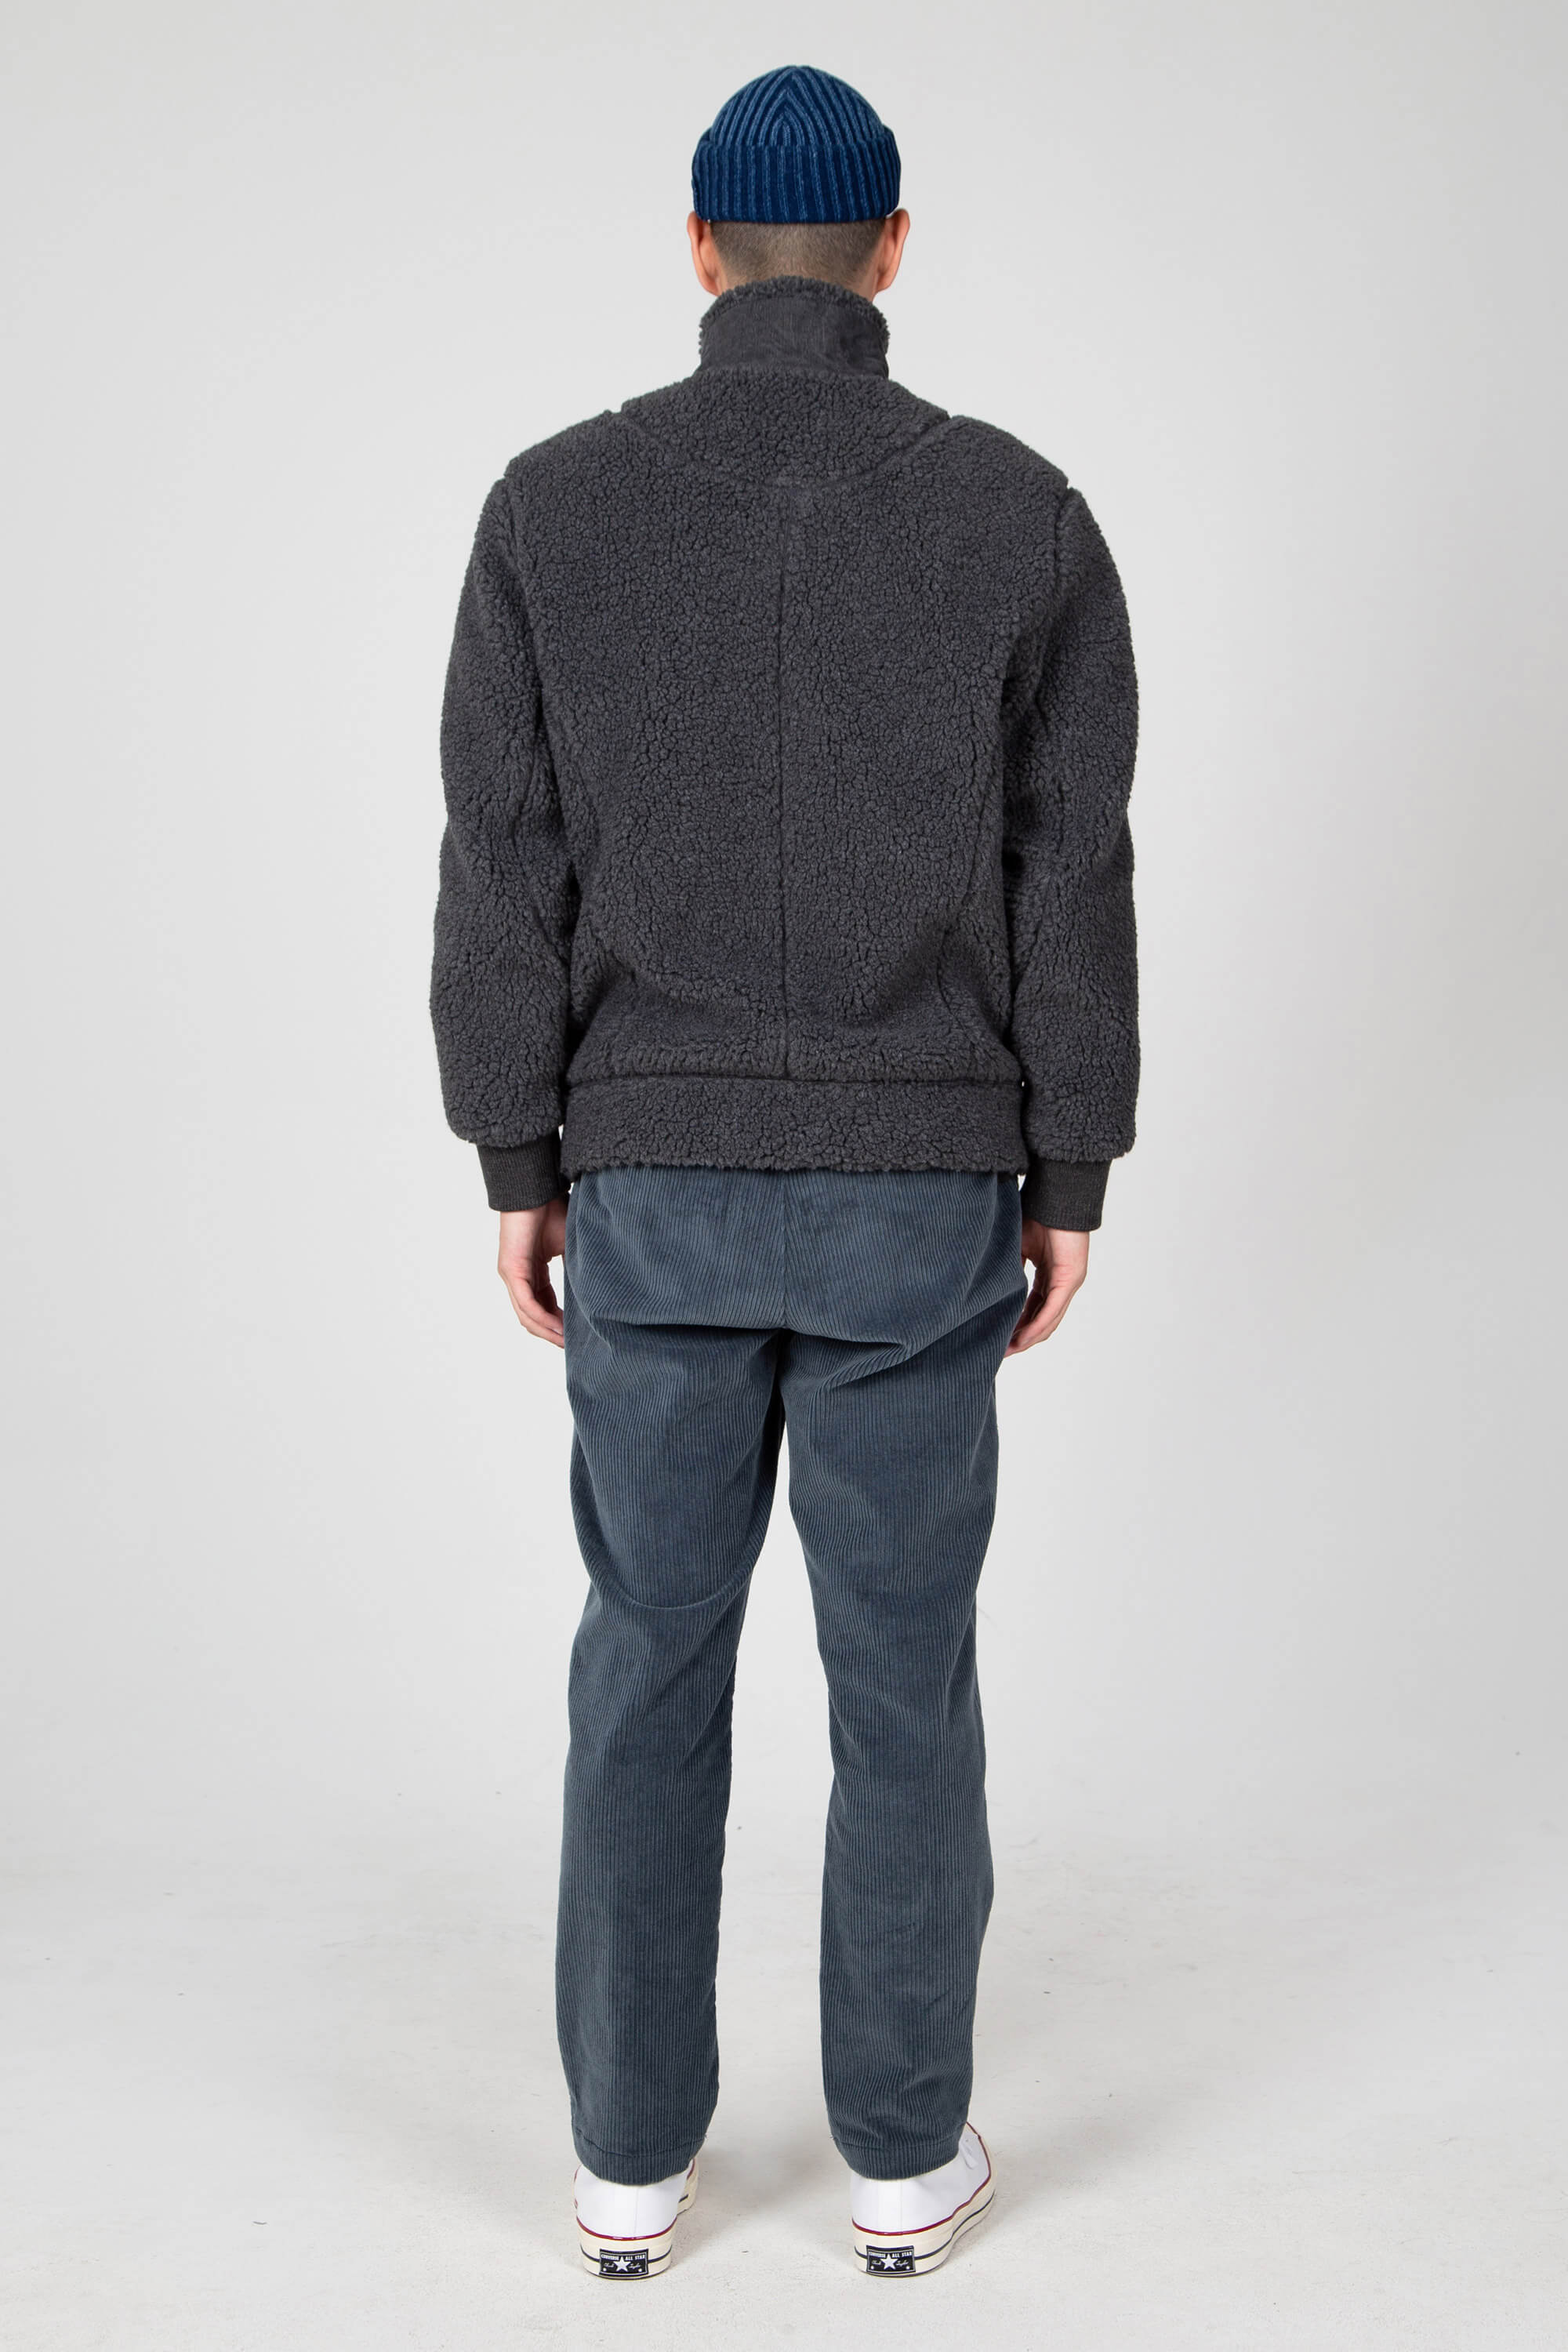 men's pohlar recycled polyester high-pile fleece zip up jacket - dark grey